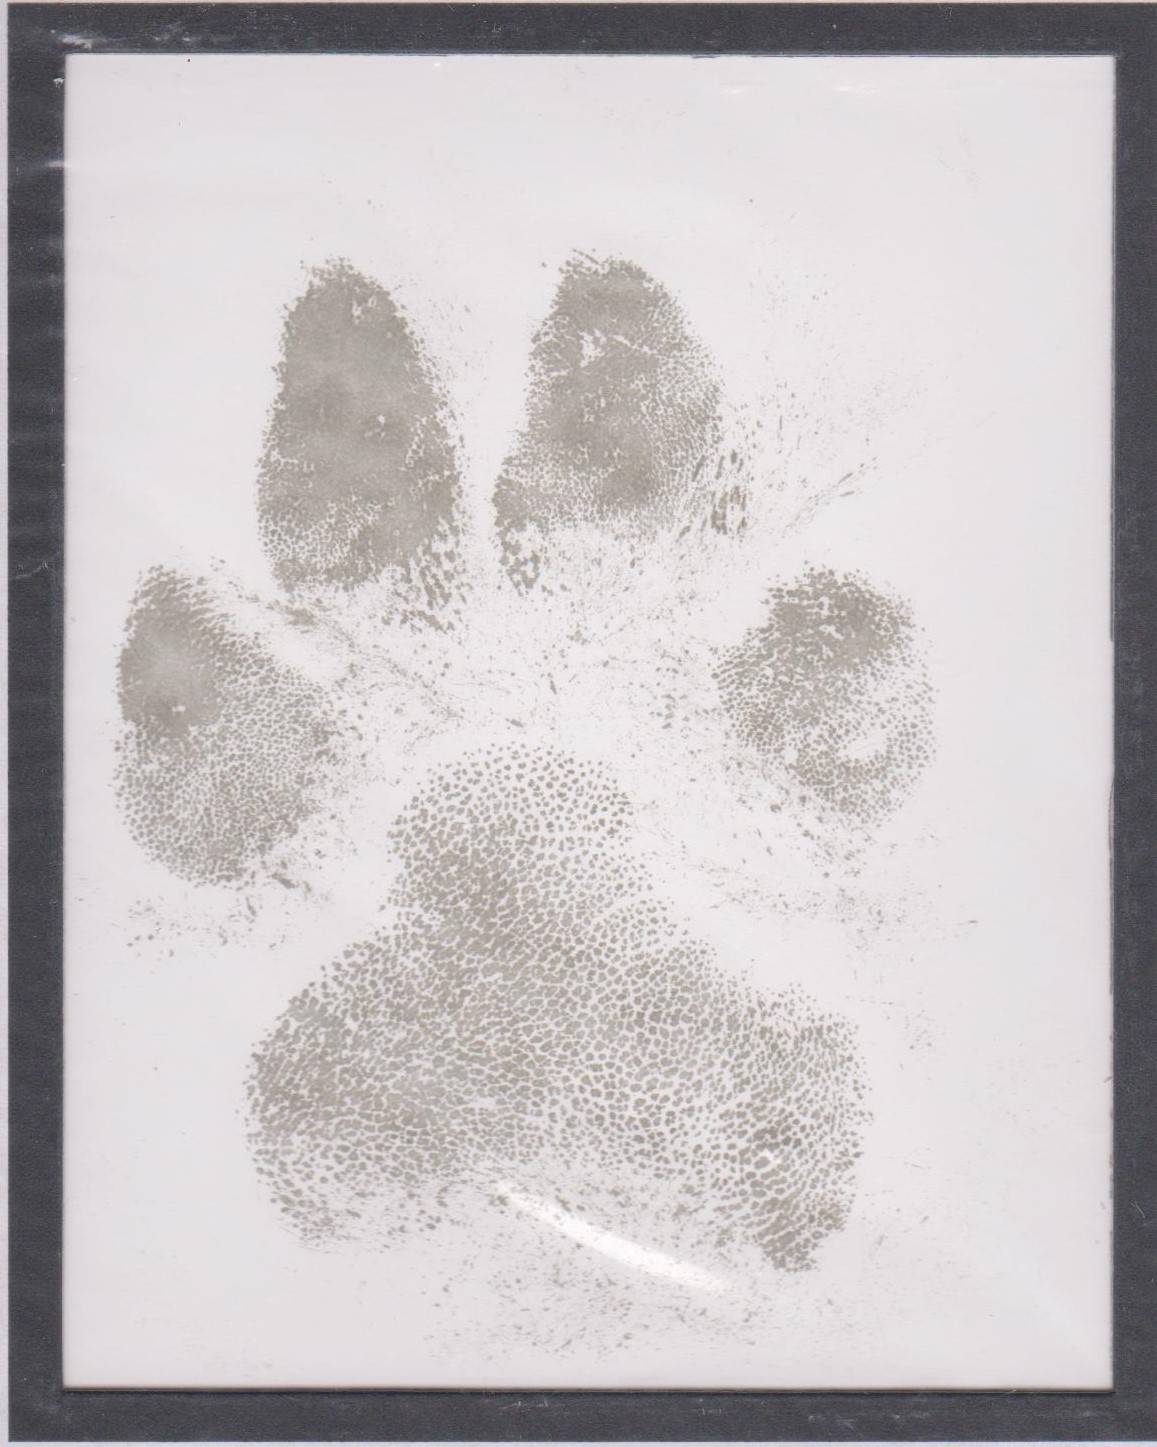 Bear's final paw print